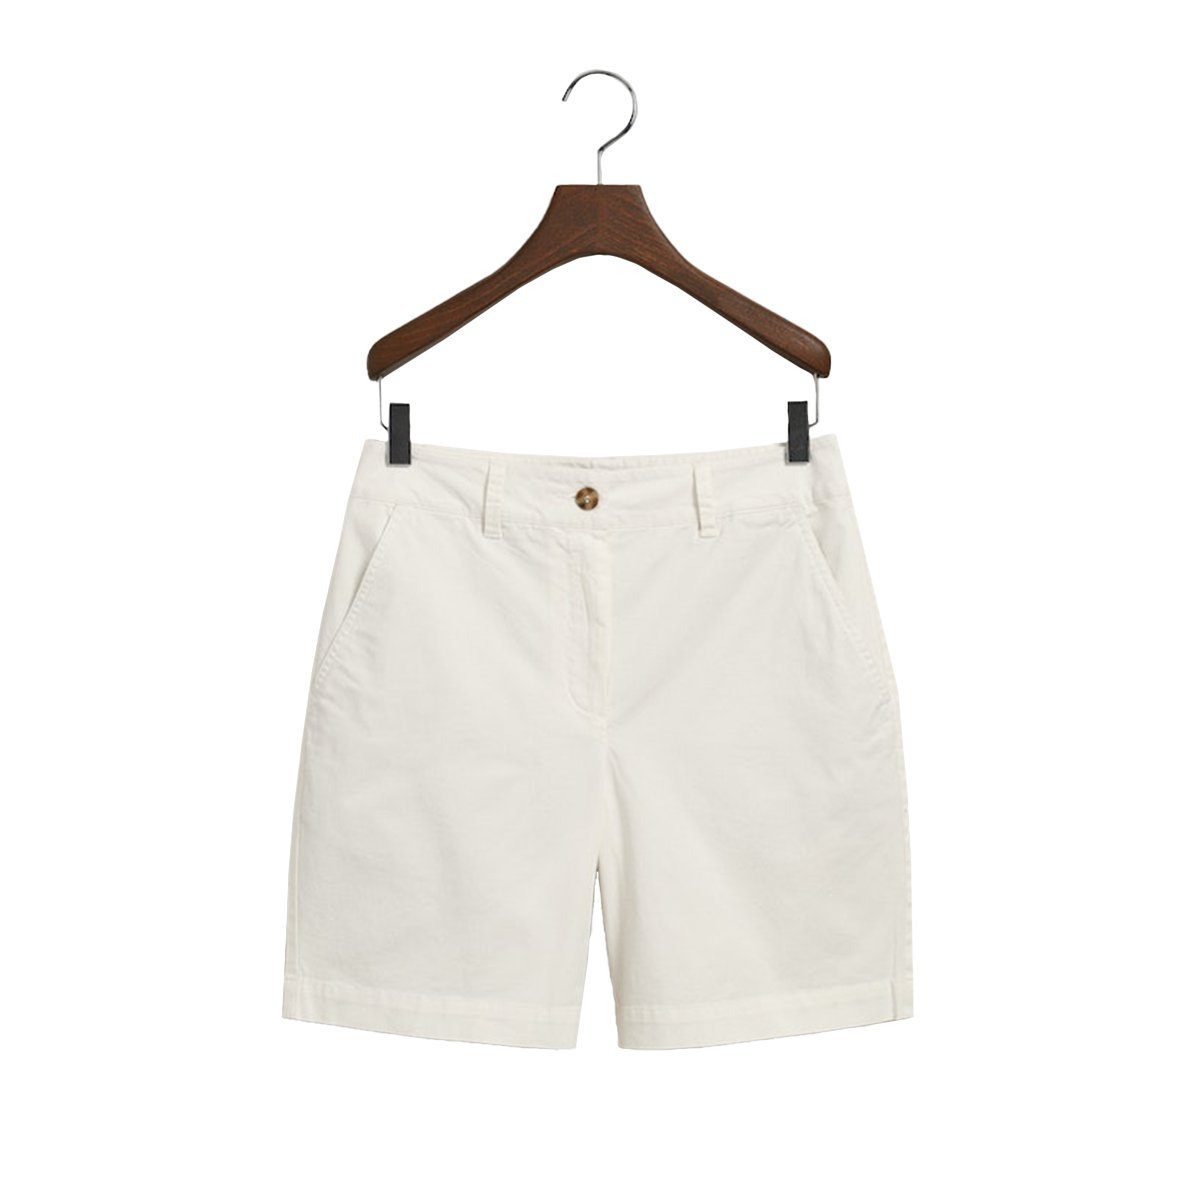 Gant Shorts 4020078 Chino Shorts Eggshell(113)